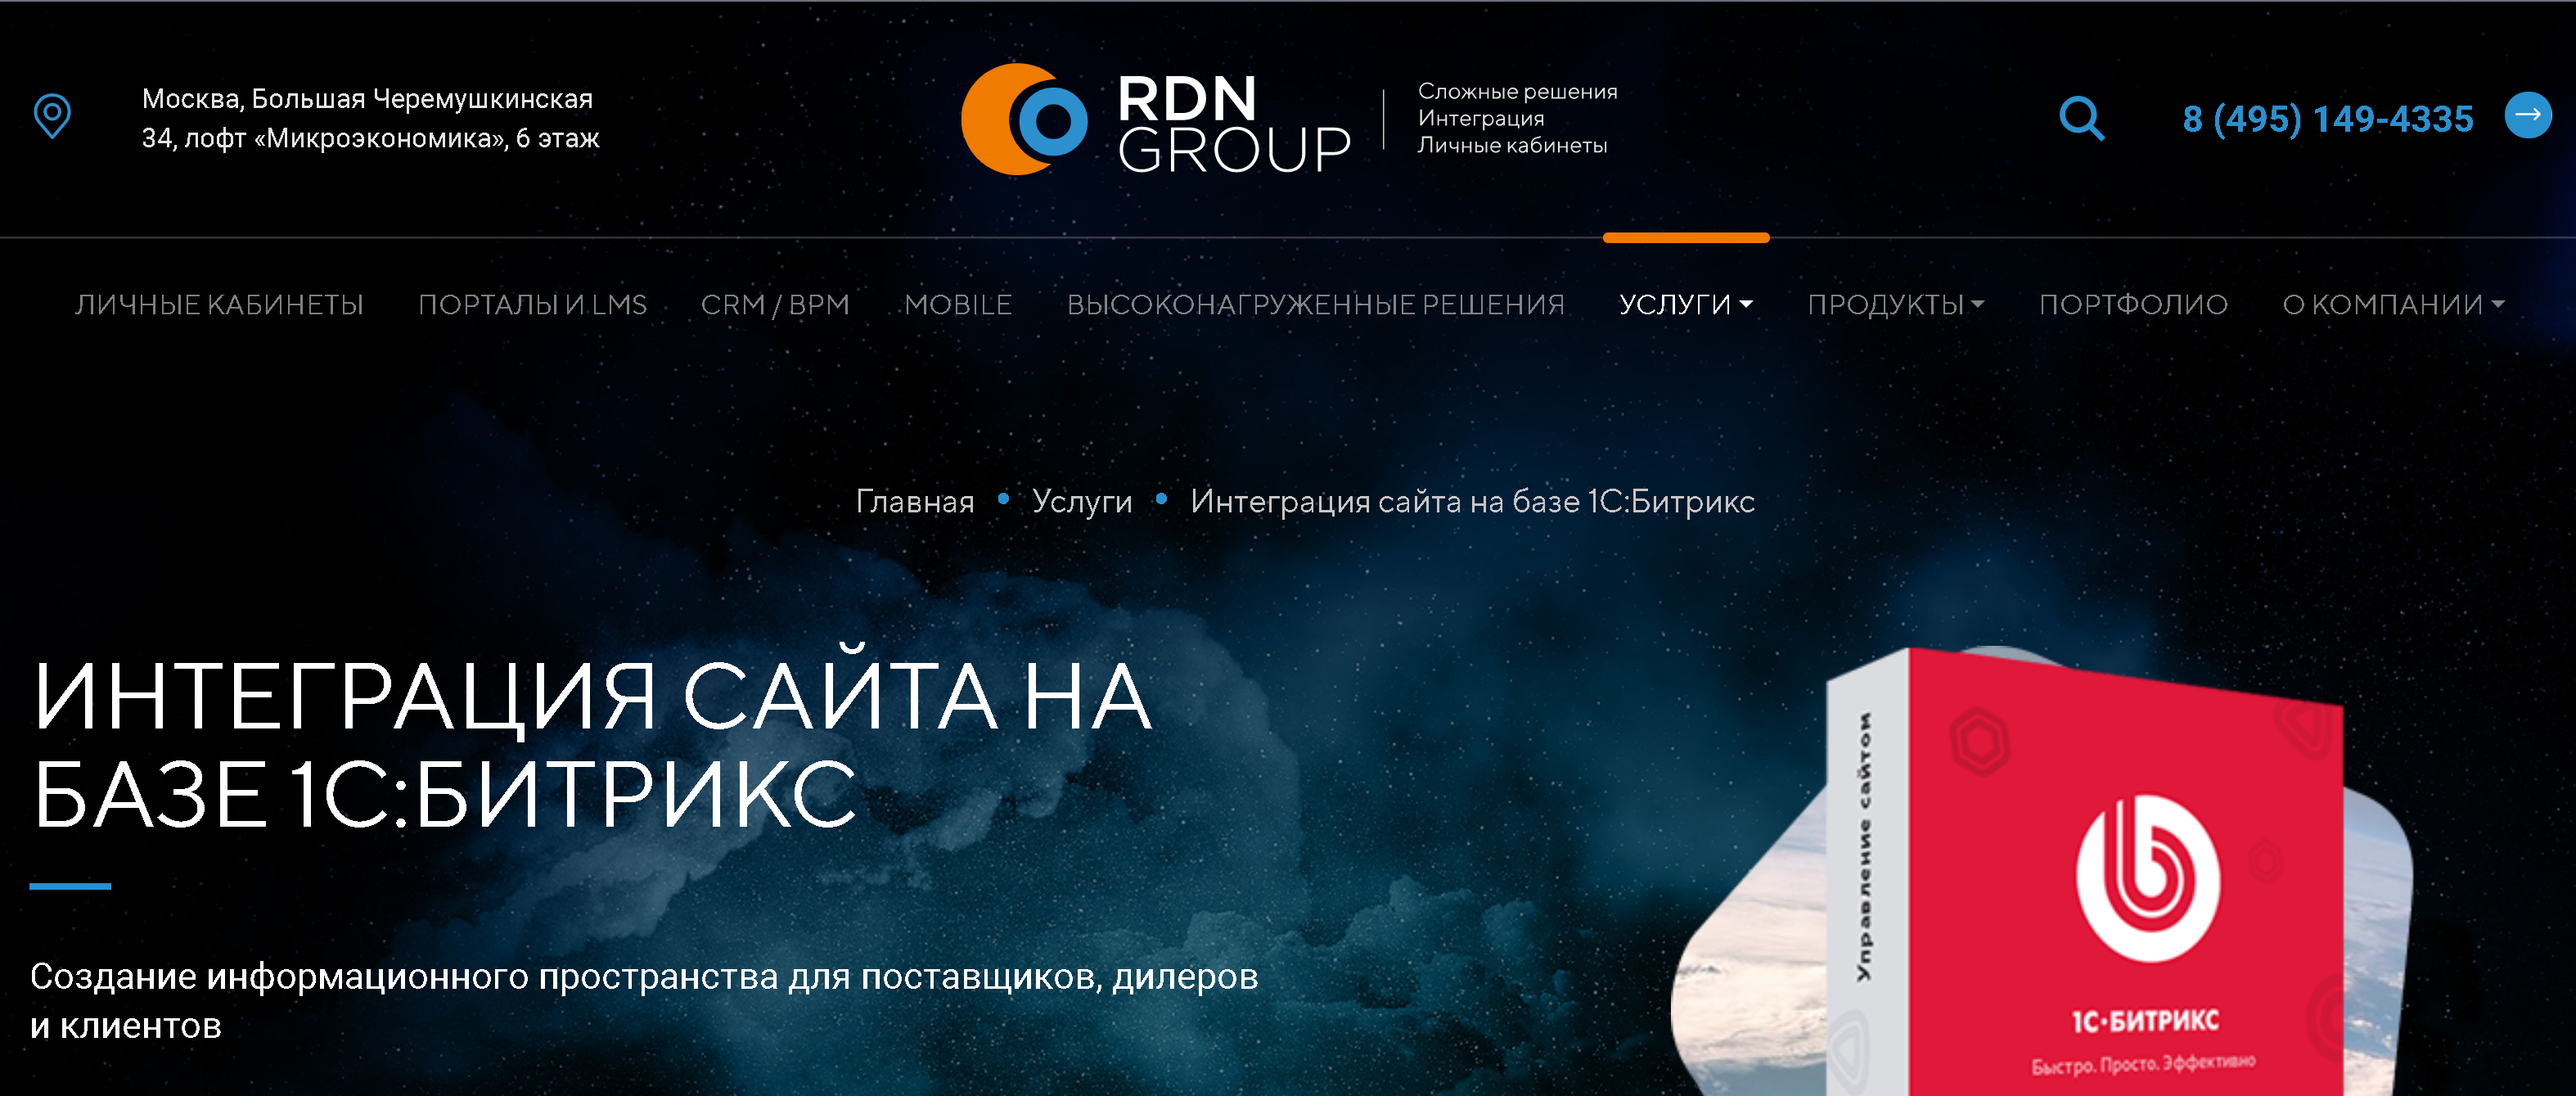 сайт для rdn group